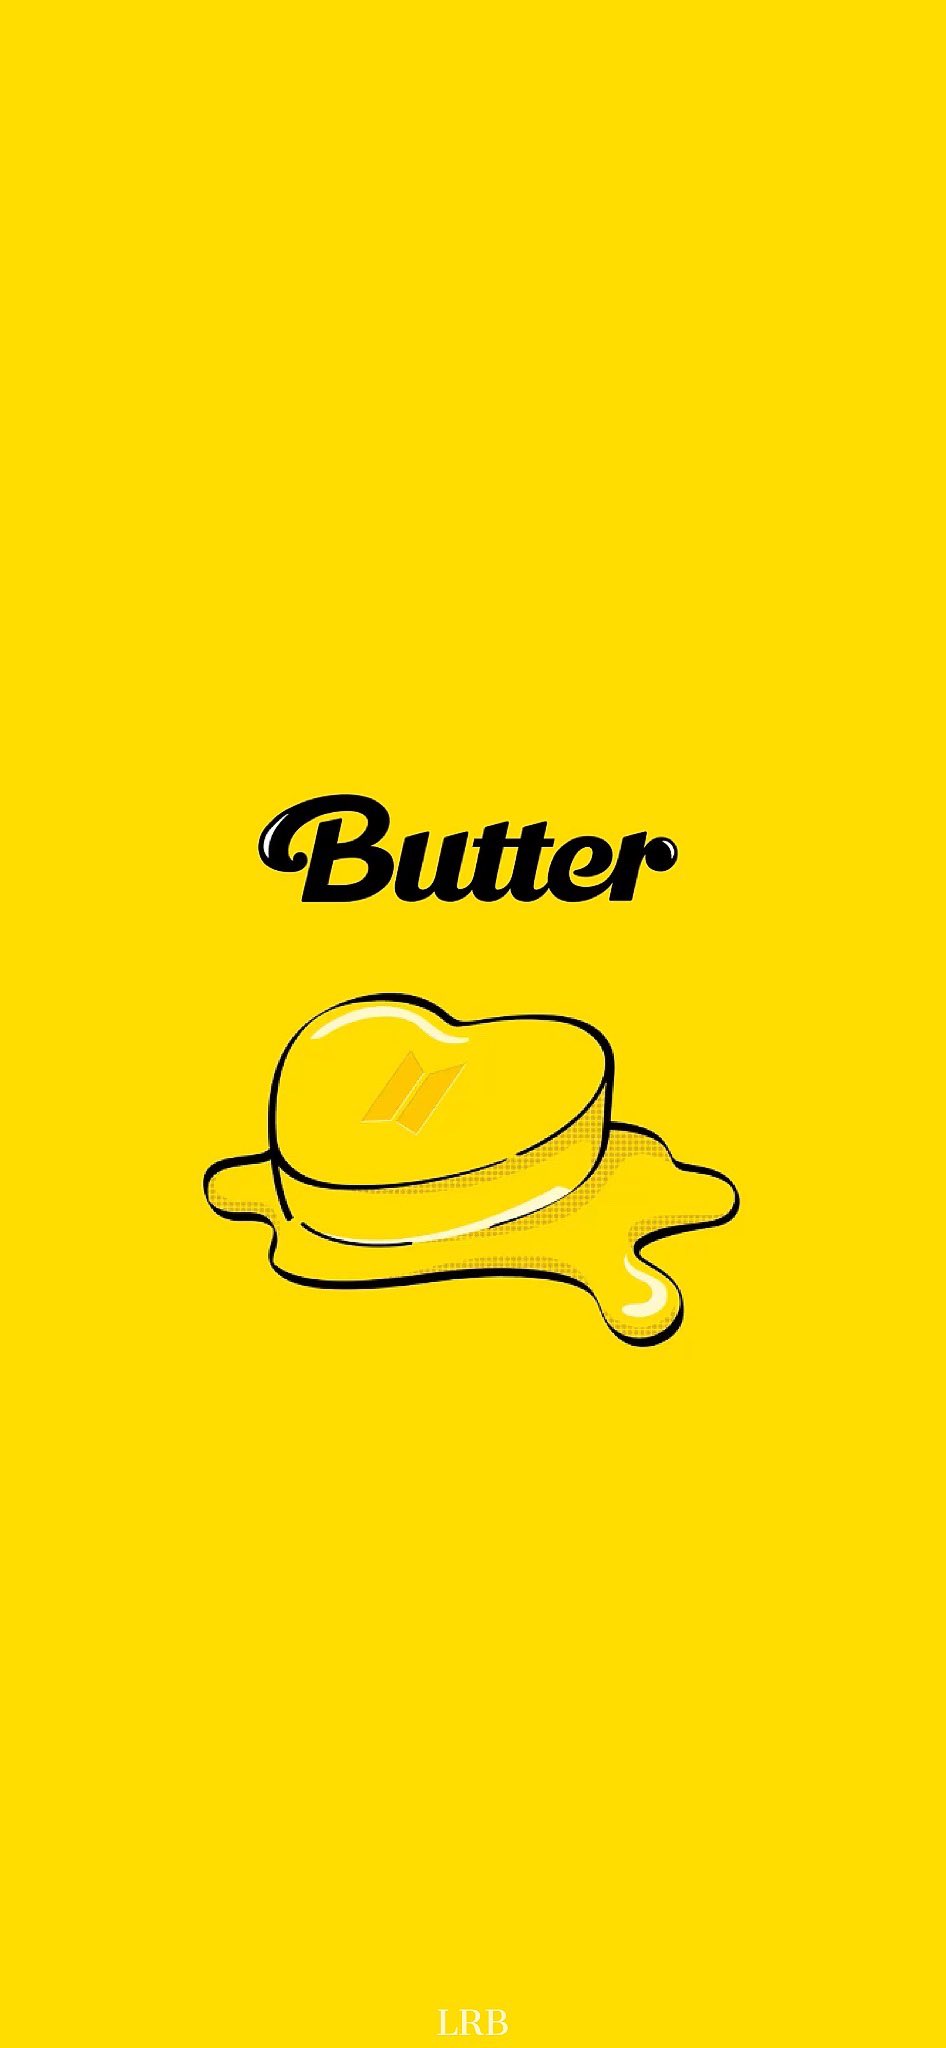 Bts butter wallpaper